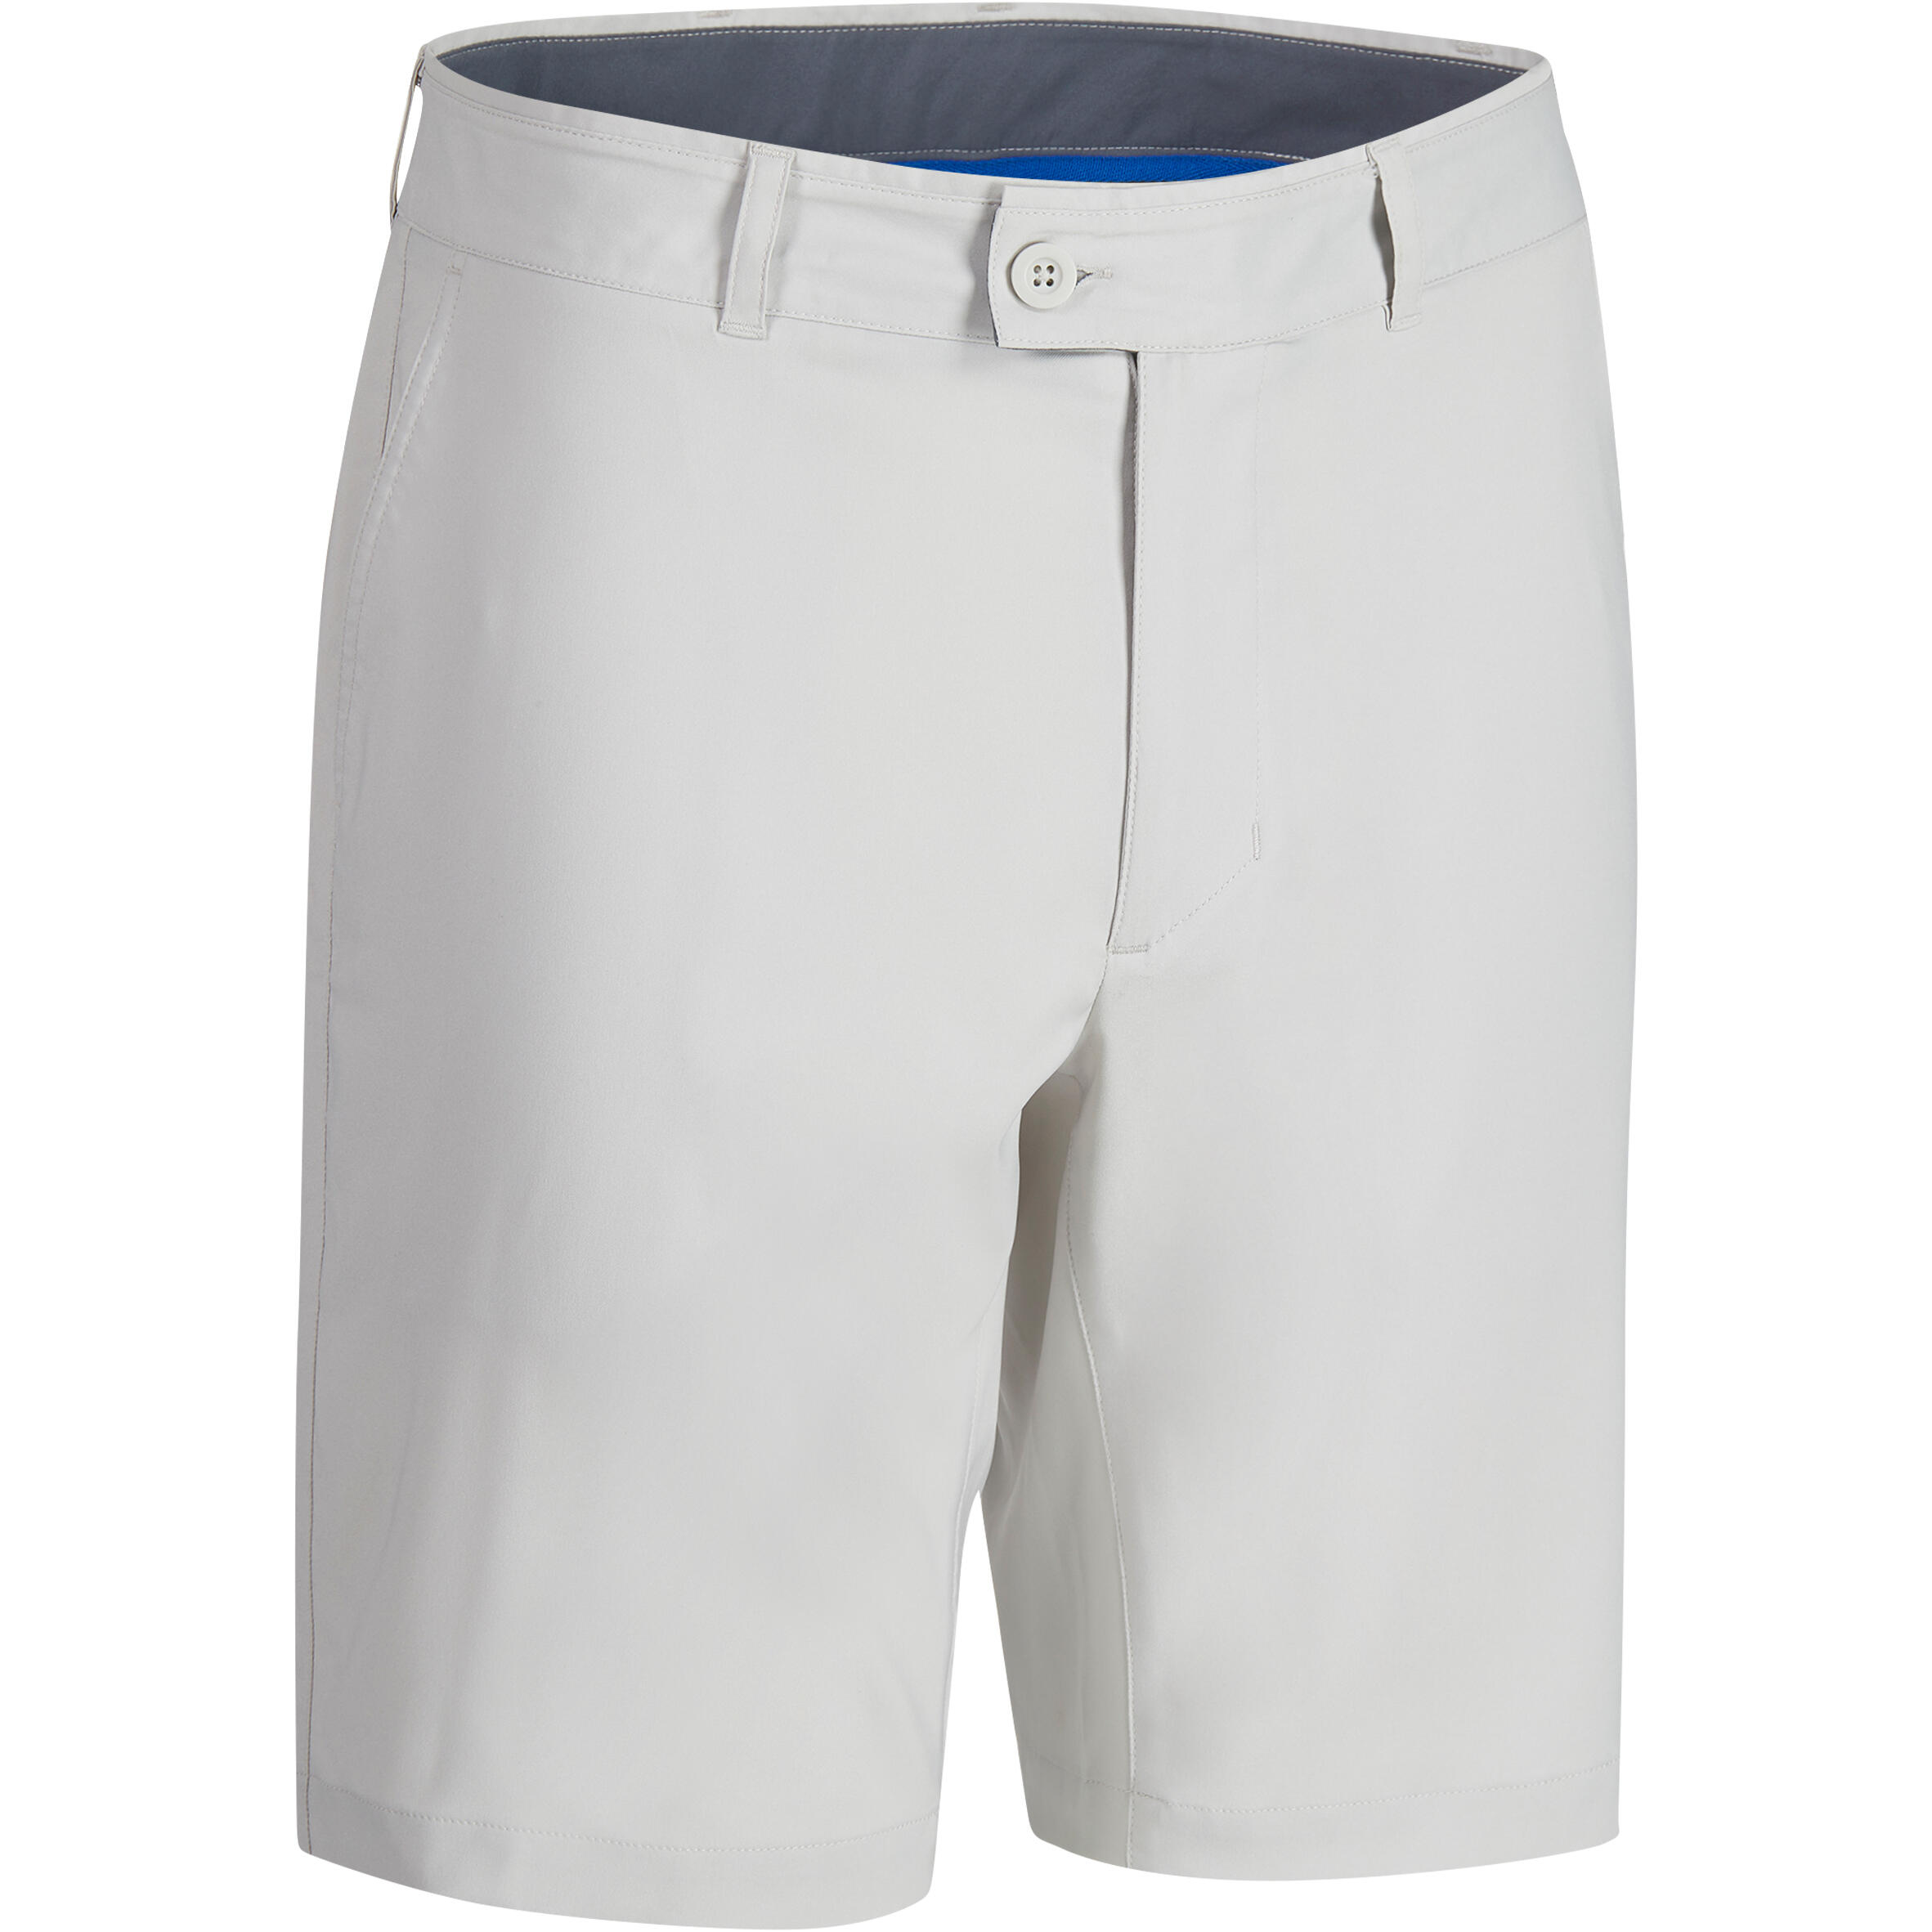 decathlon mens golf shorts